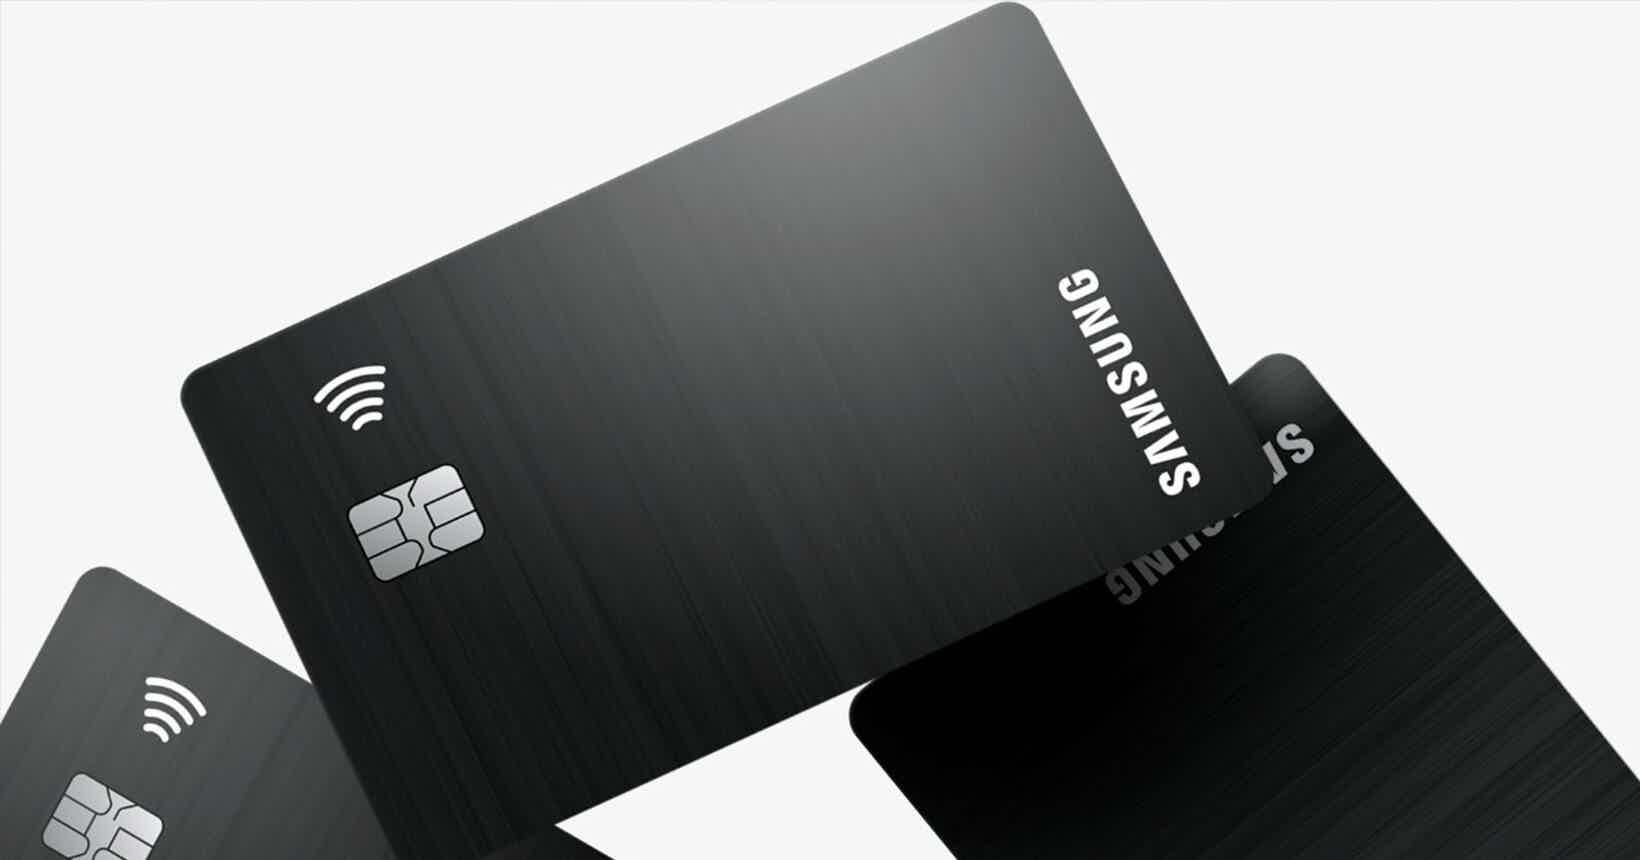 Mas, afinal, como funciona o cartão? Fonte: Samsung.